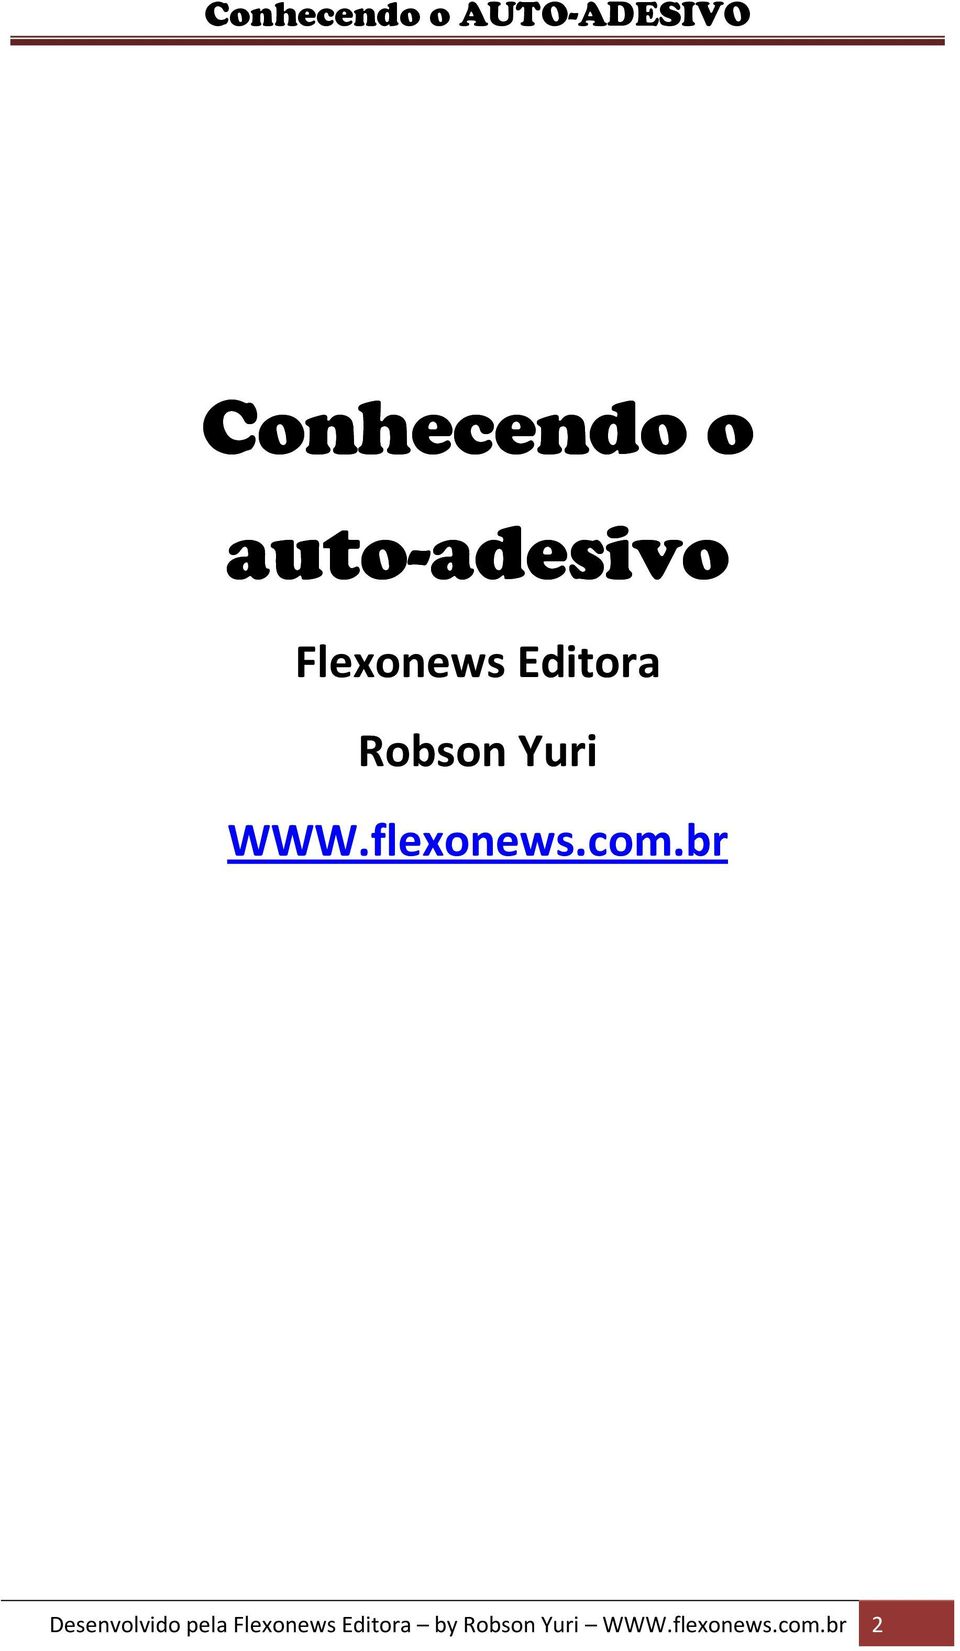 flexonews.com.